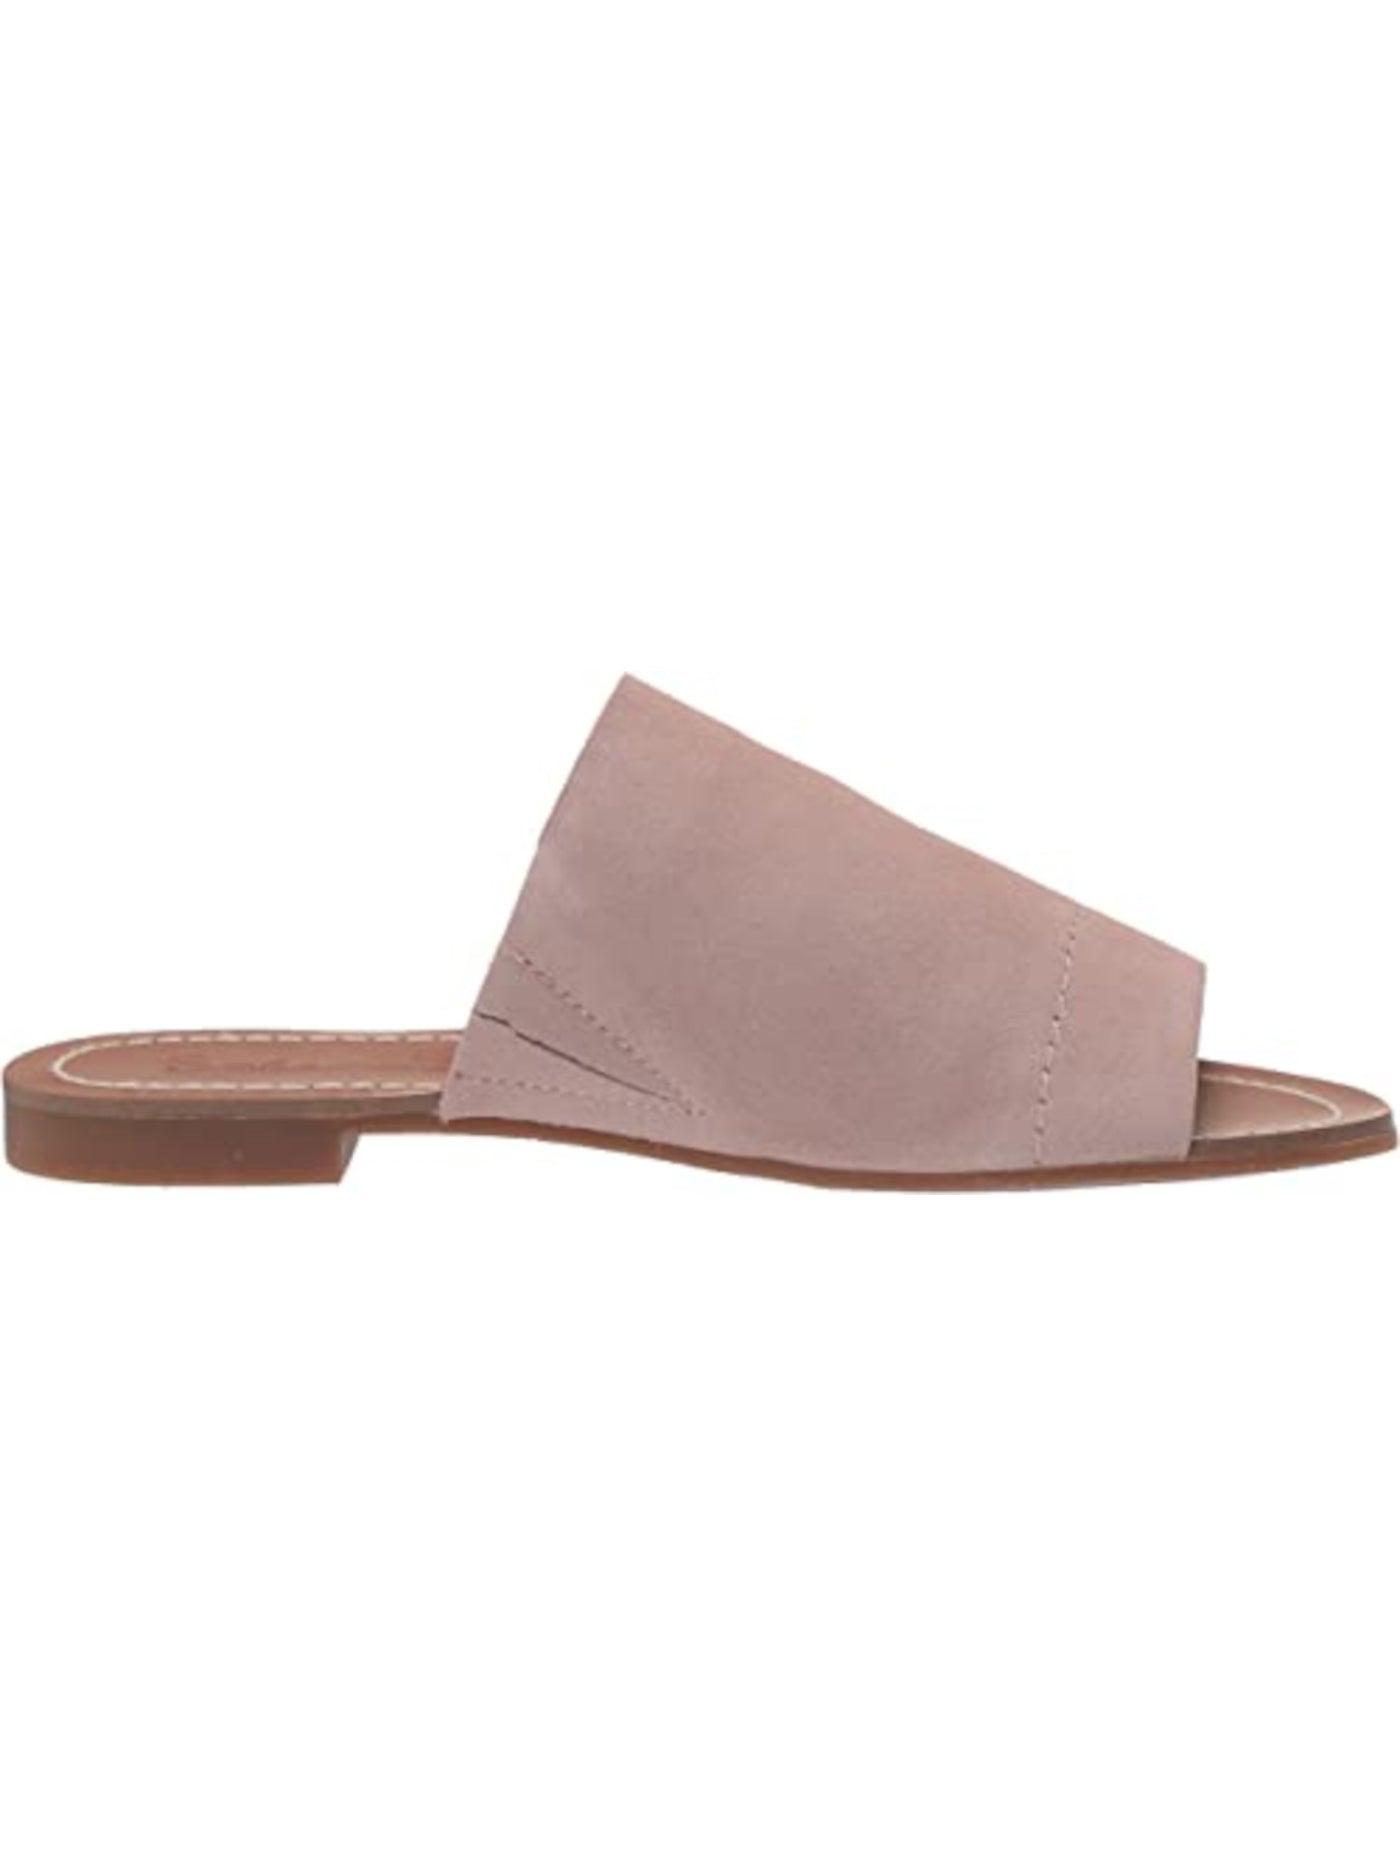 SPLENDID Womens Beige Goring Mavis Round Toe Slip On Leather Slide Sandals Shoes 7 M